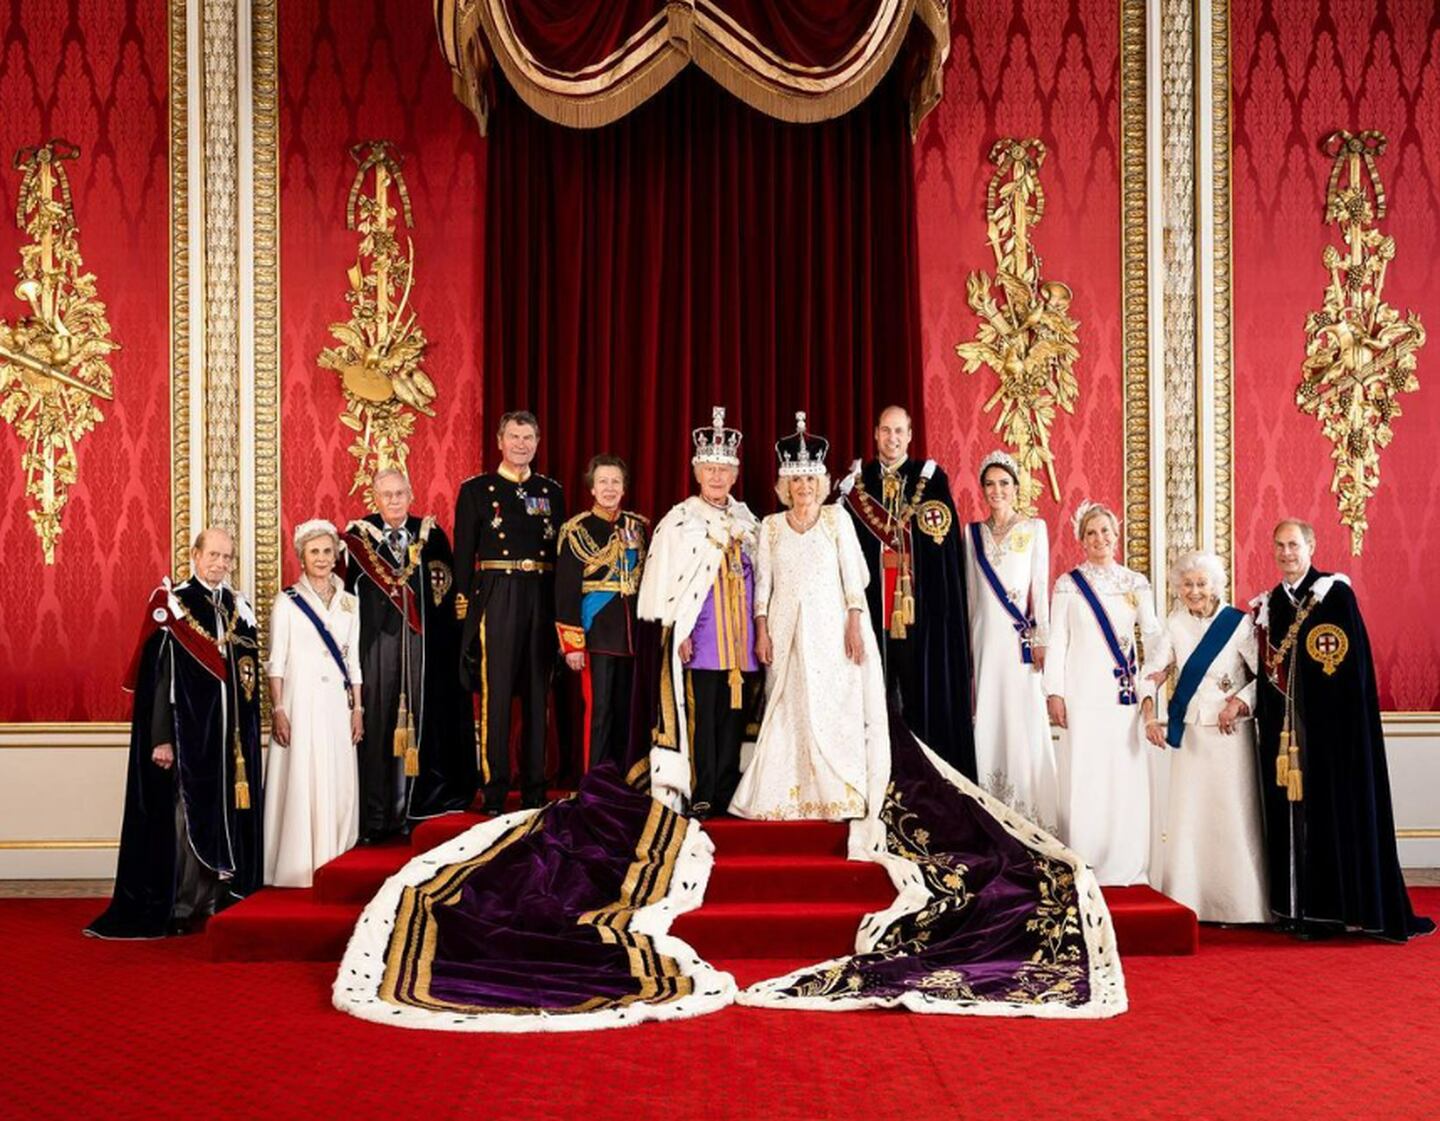 Foto oficial do dia da coroação do rei Charles III e da rainha Camilla, em 6 de maio
Imagem: @theroyalfamily